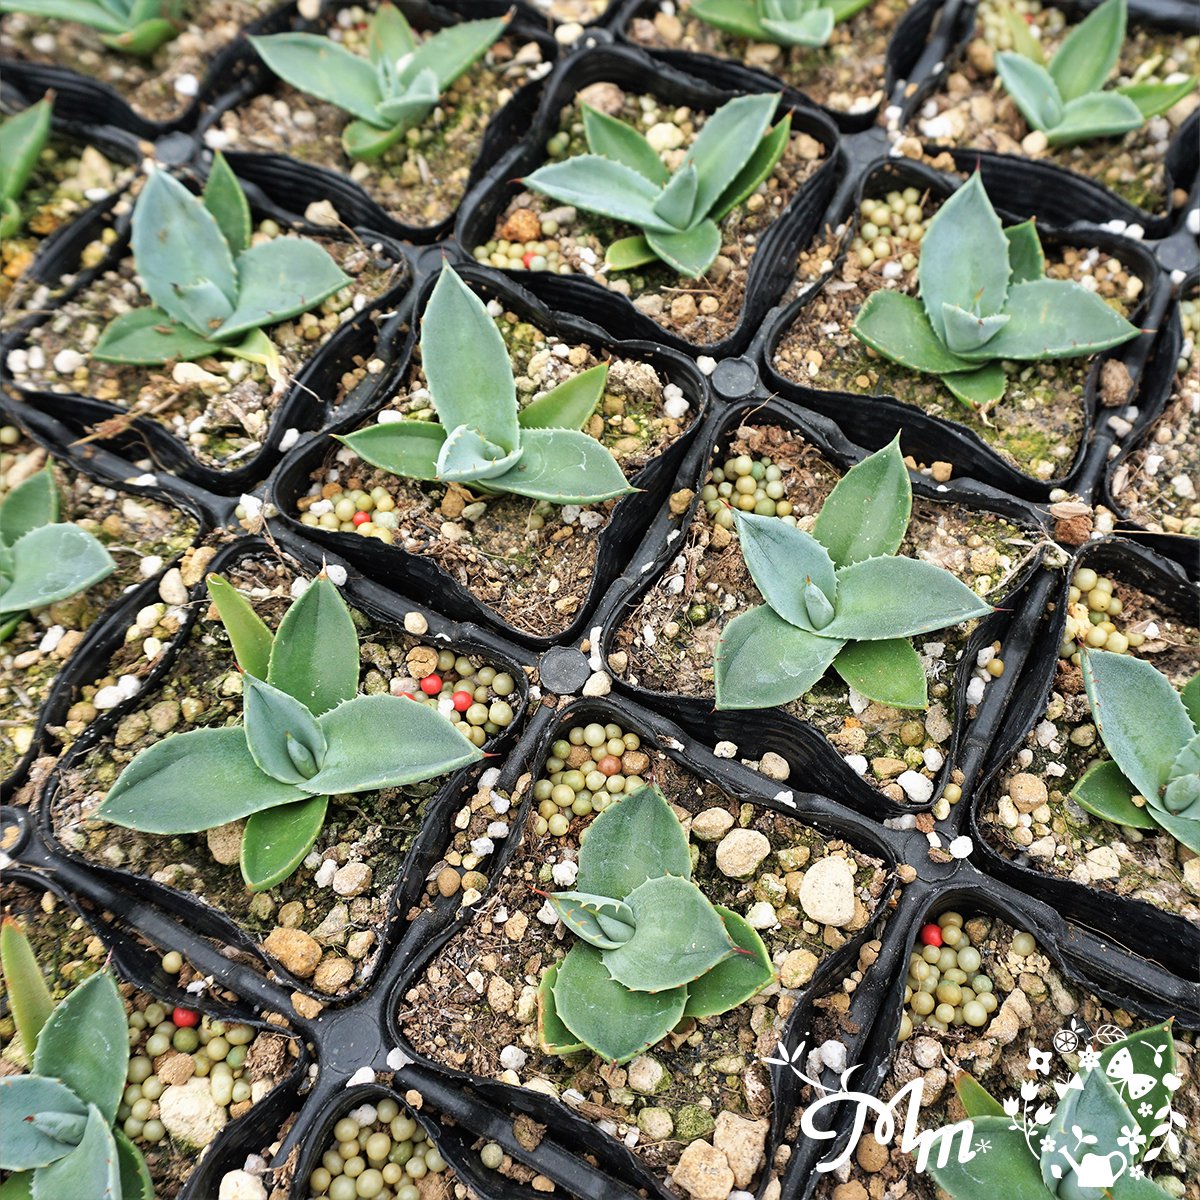 【丸っこい葉が特徴的】Agave parryi var. truncata (アガベ パリートランカータ)7.5㎝ポット苗(メリクロン苗)